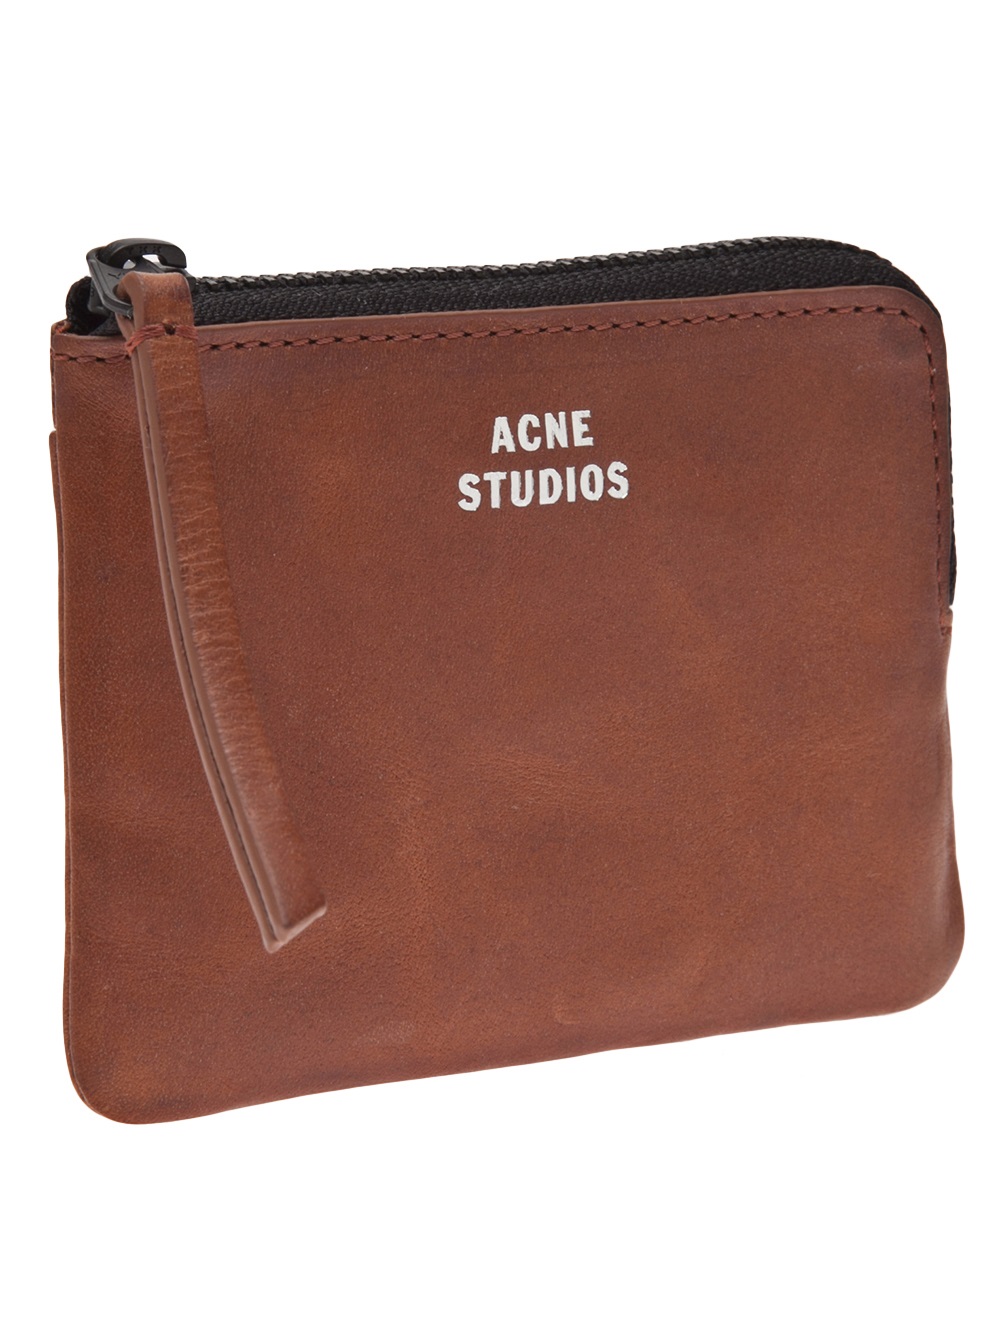 Acne Studios Zip Around Wallet in Brown - Lyst